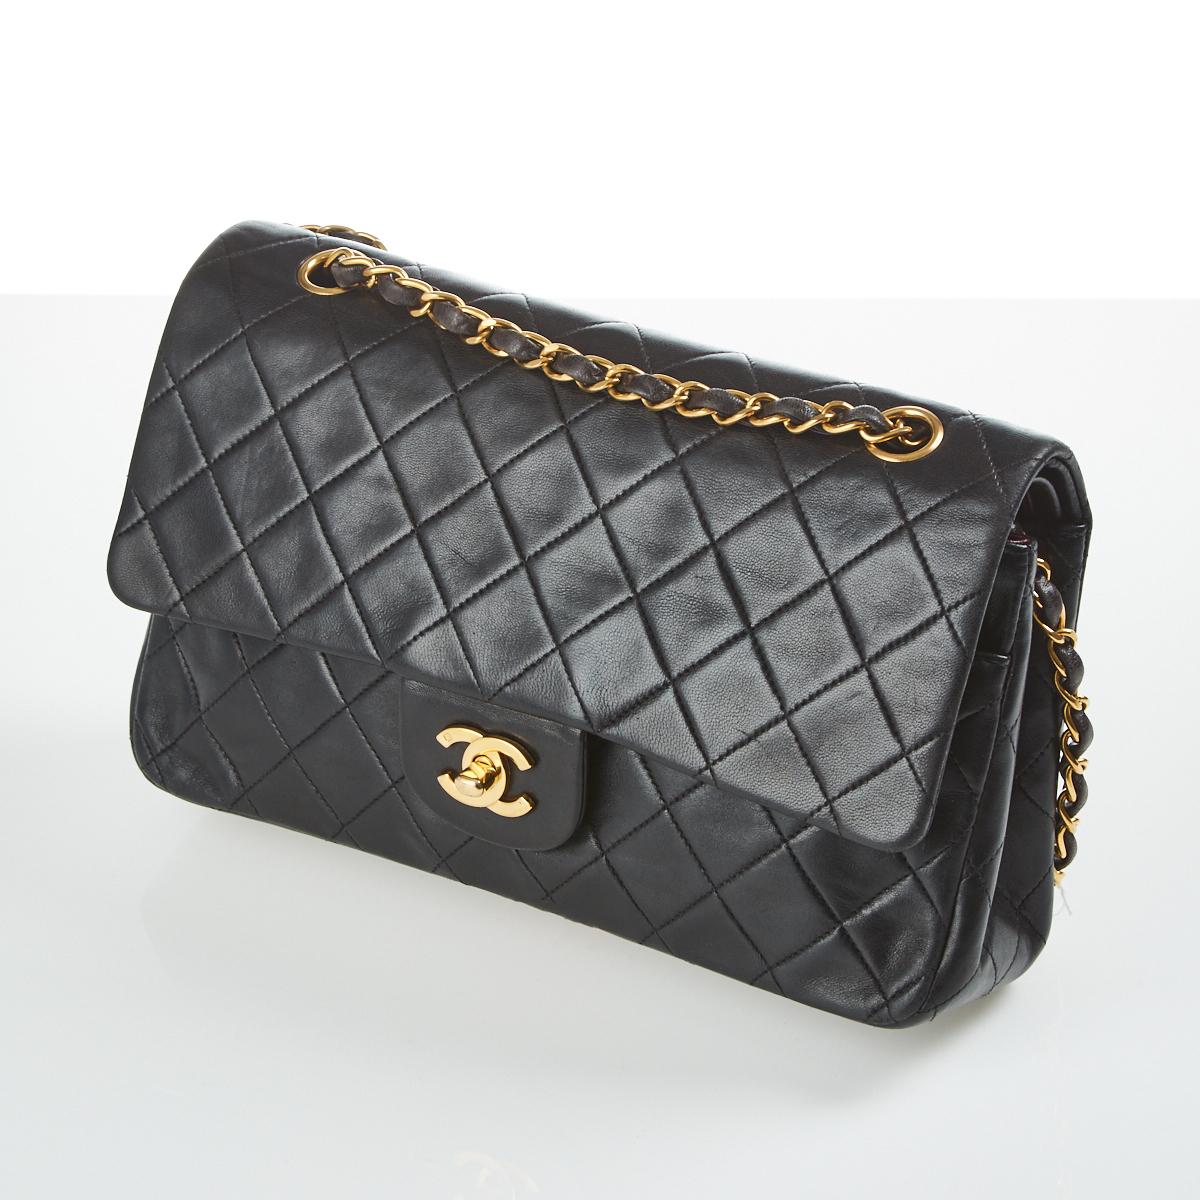 Chanel Vintage Classic Double Flap Bag 26